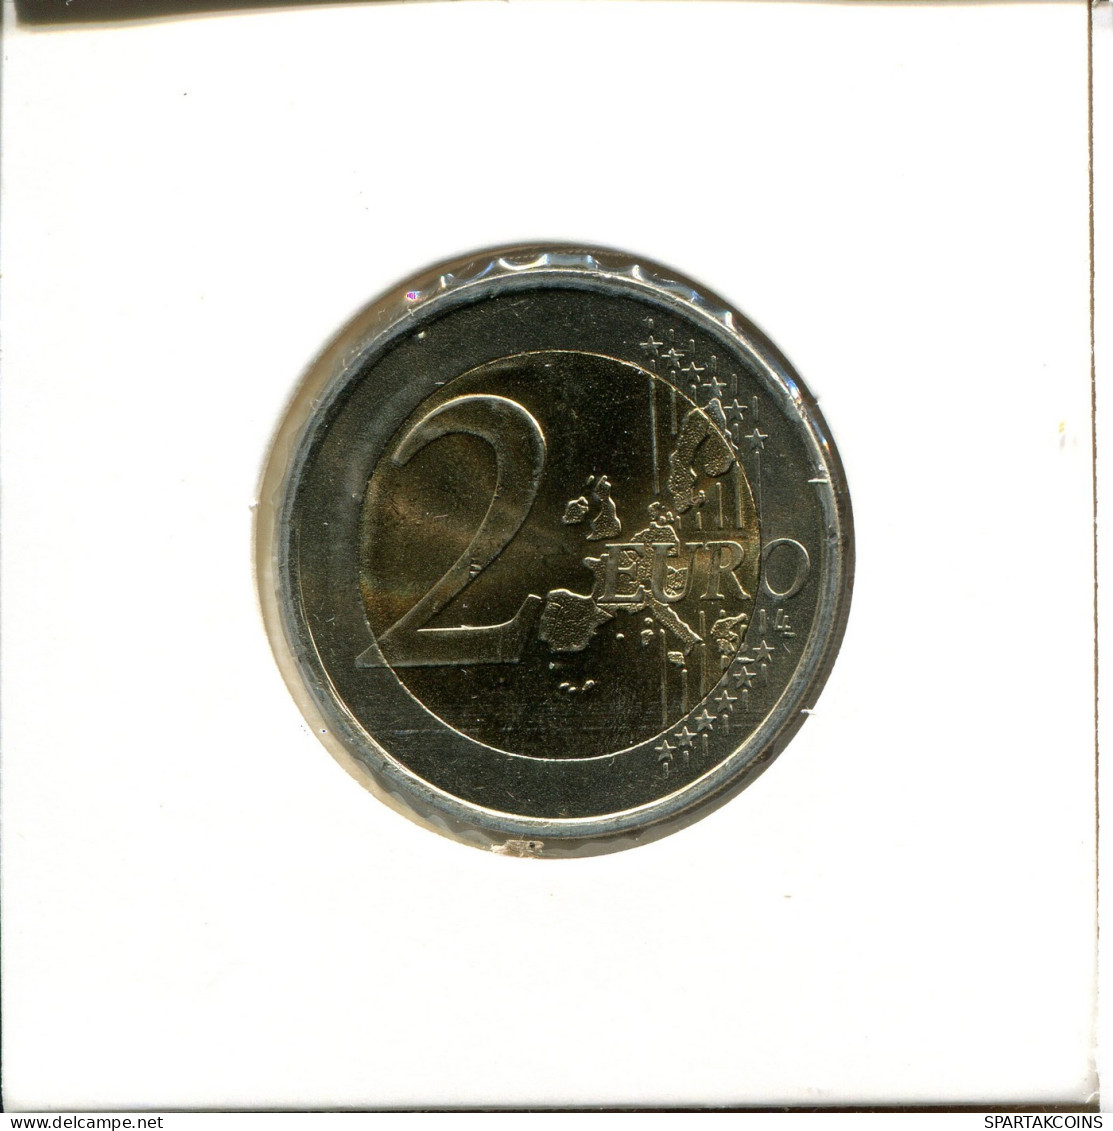 2 EURO 2000 SPAIN Coin #EU340.U.A - Spain